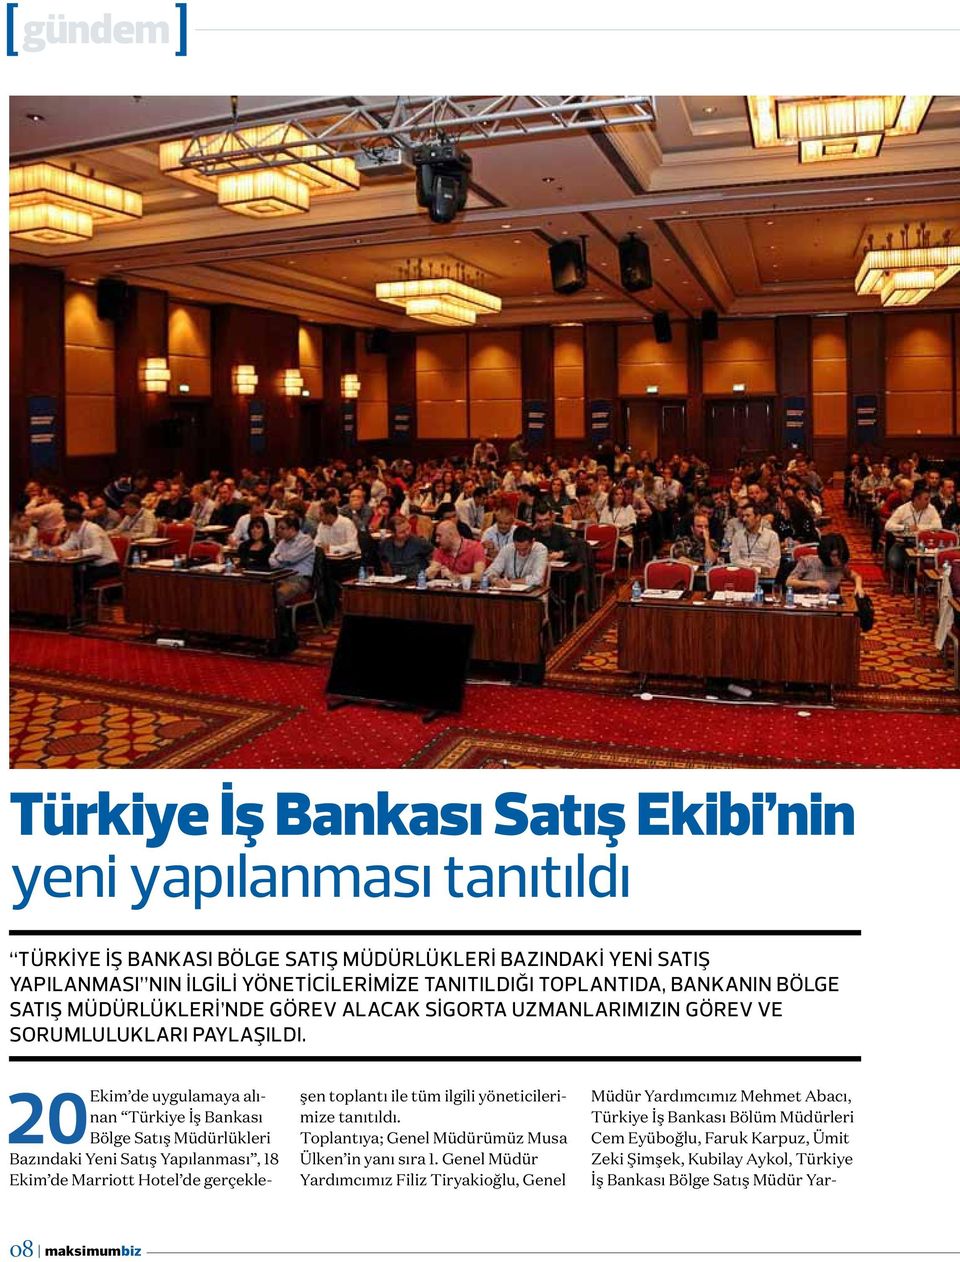 20 Ekim de uygulamaya alınan Türkiye İş Bankası Bölge Satış Müdürlükleri Bazındaki Yeni Satış Yapılanması, 18 Ekim de Marriott Hotel de gerçekleşen toplantı ile tüm ilgili yöneticilerimize tanıtıldı.